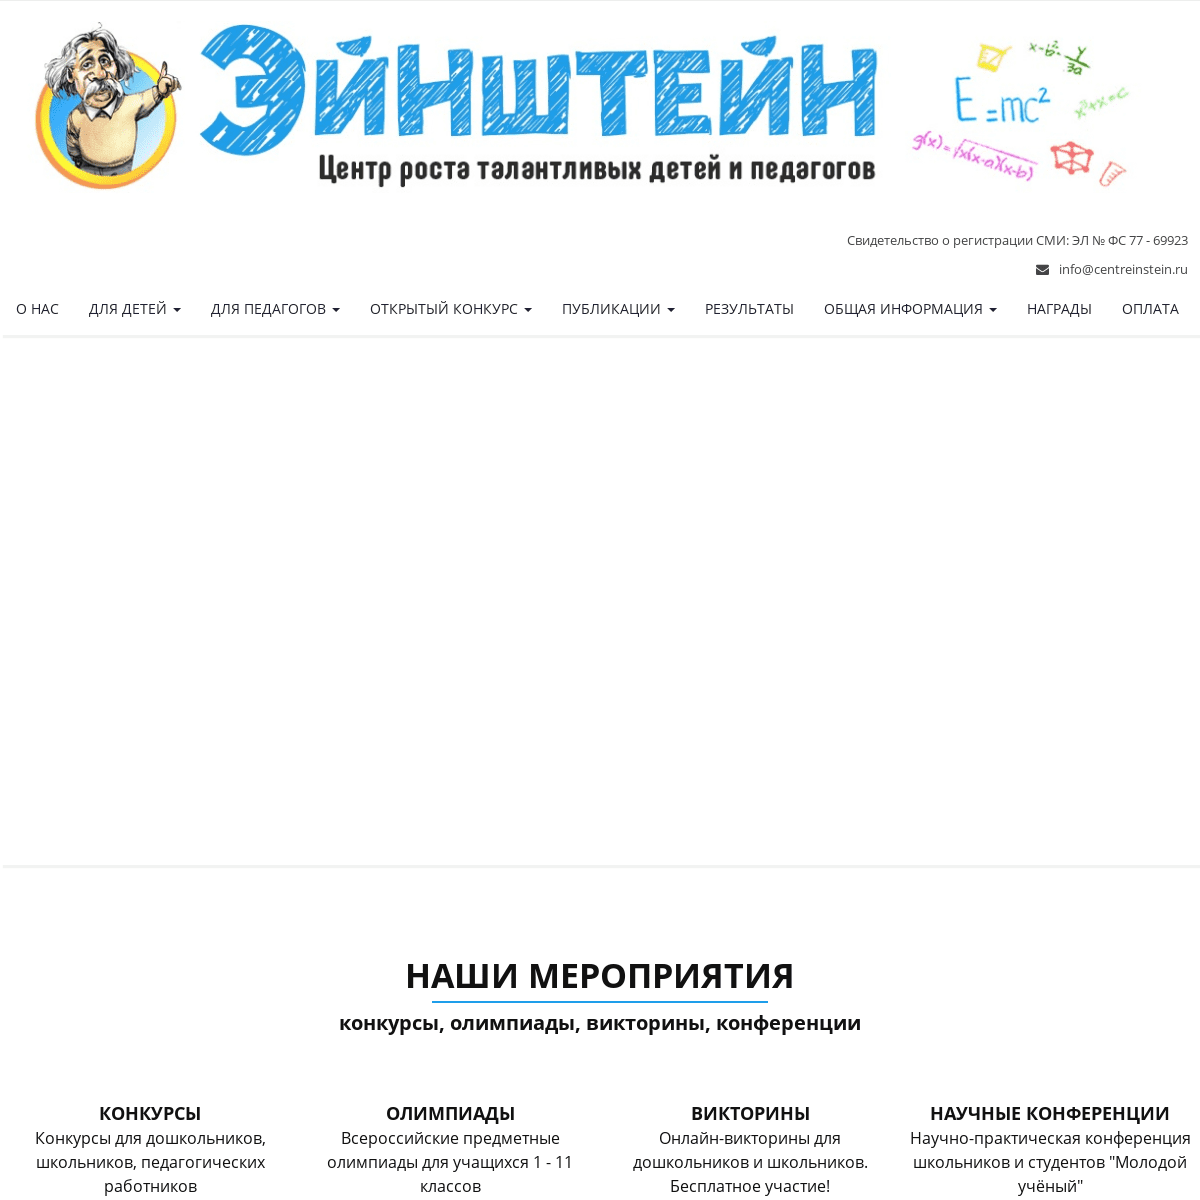 A complete backup of centreinstein.ru